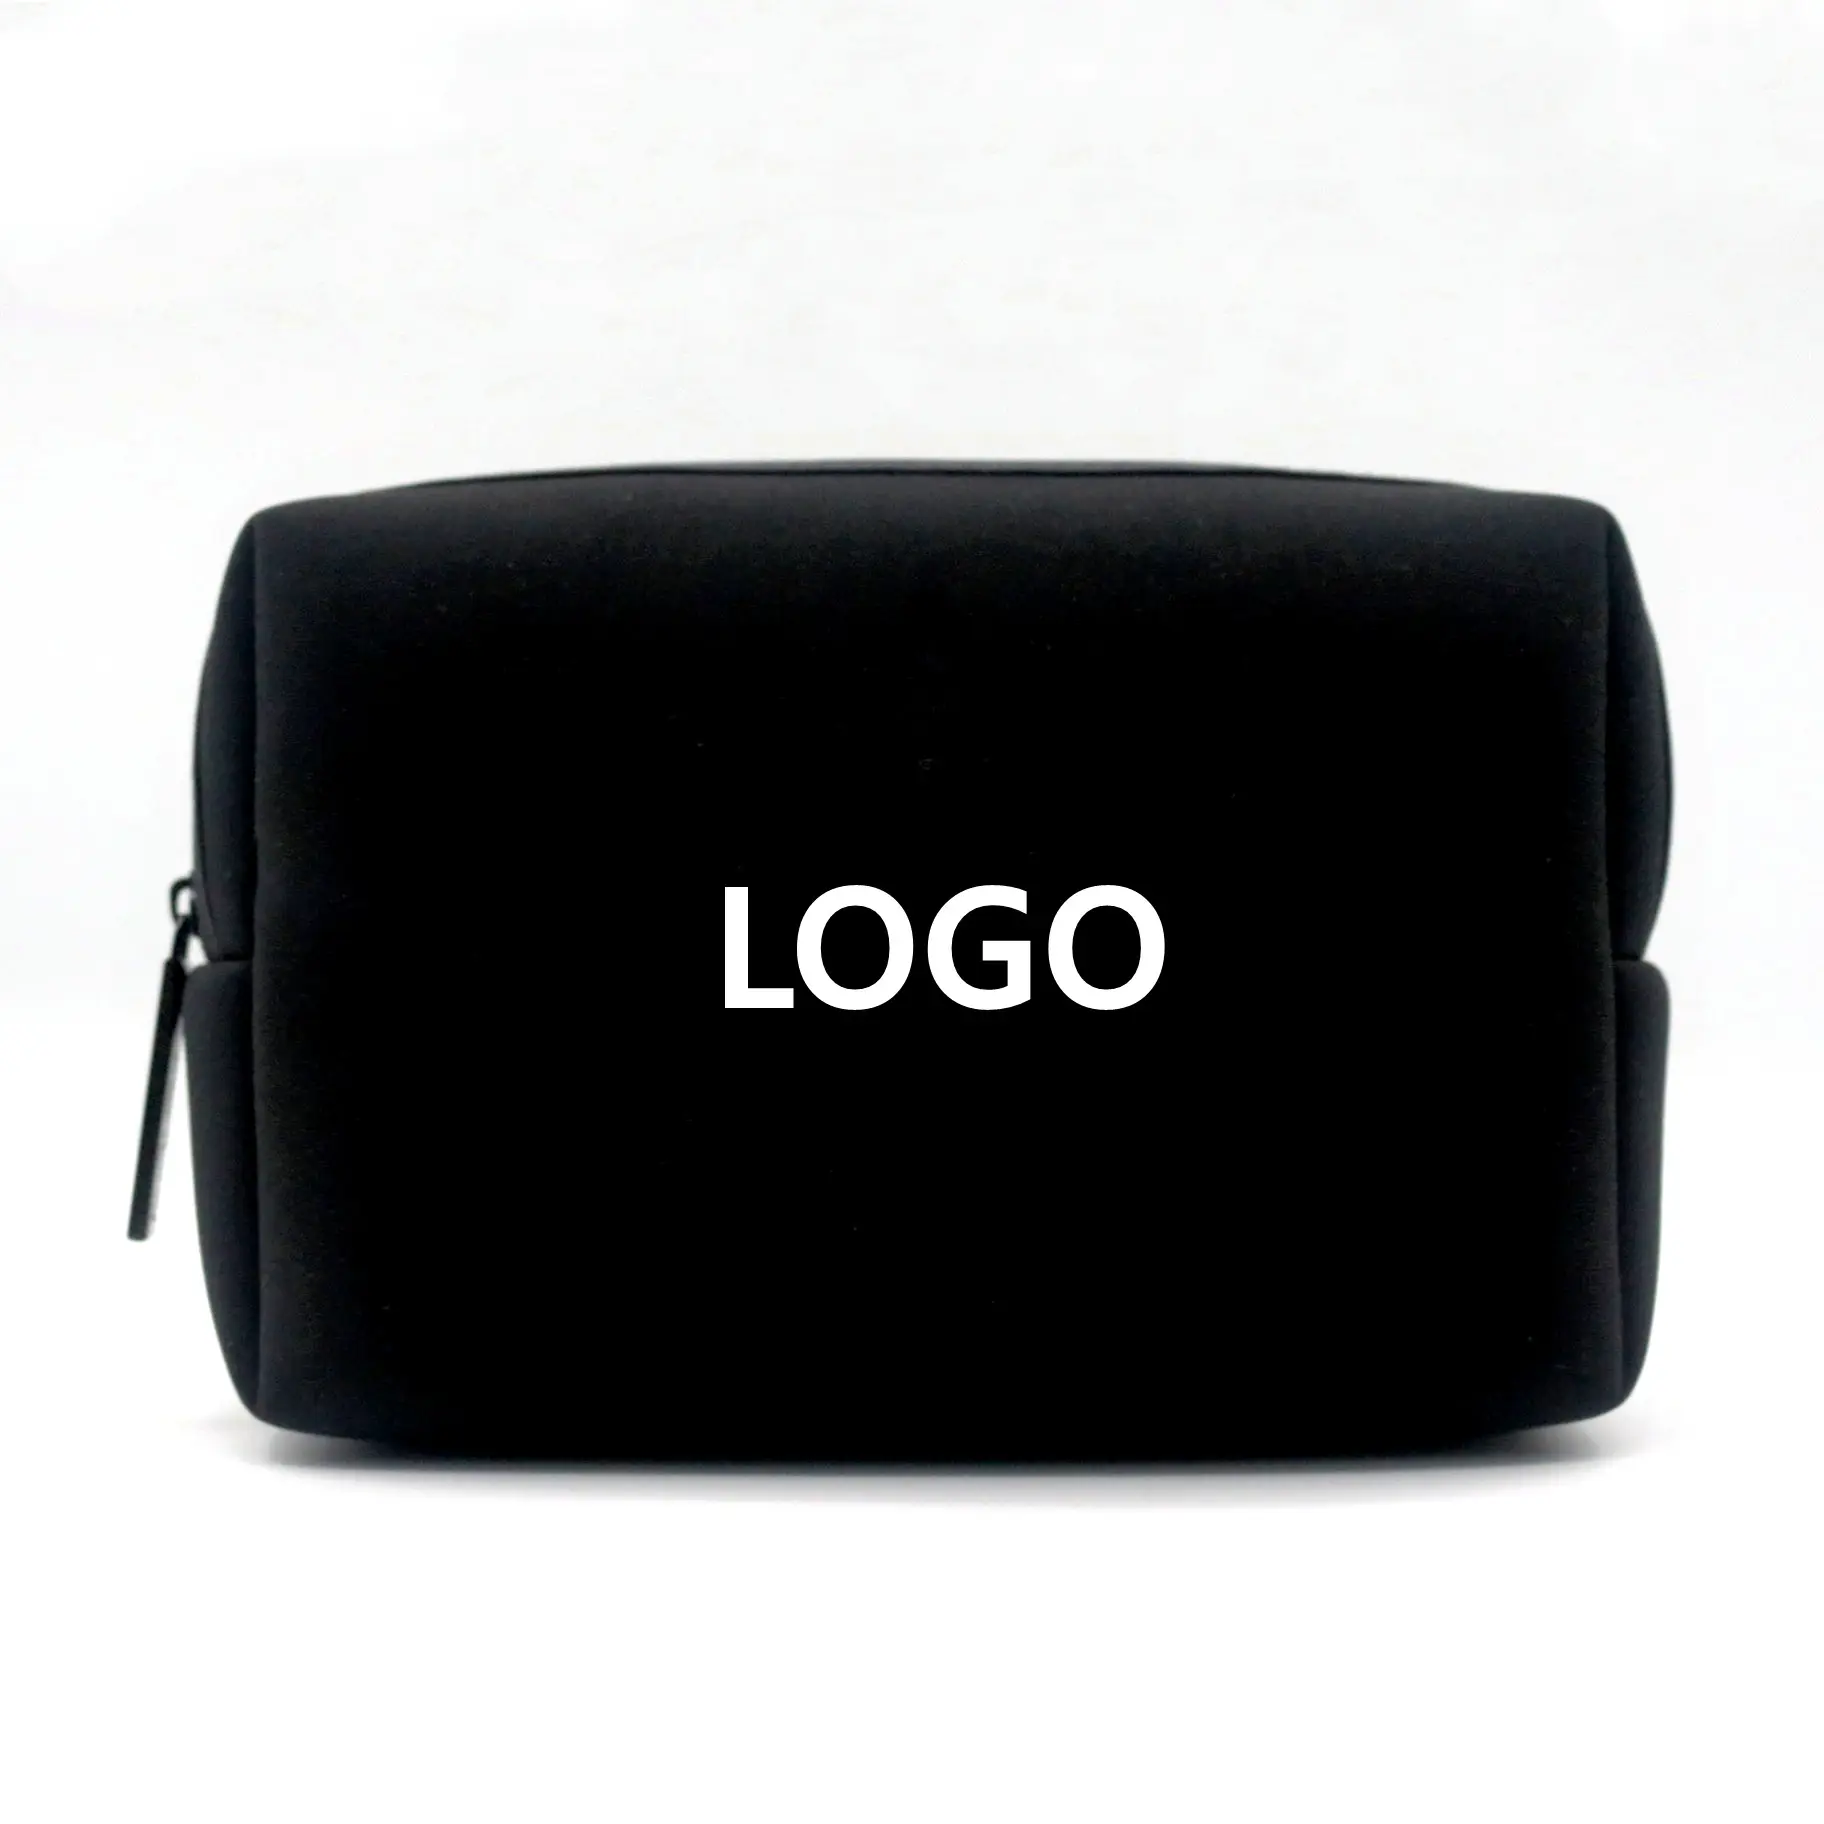 スポーツスタイル新しいデザイン品質ネオプレン生地メンズトイレタリーウォッシュバッグ日常使用ブラックネオプレン防水化粧品バッグ